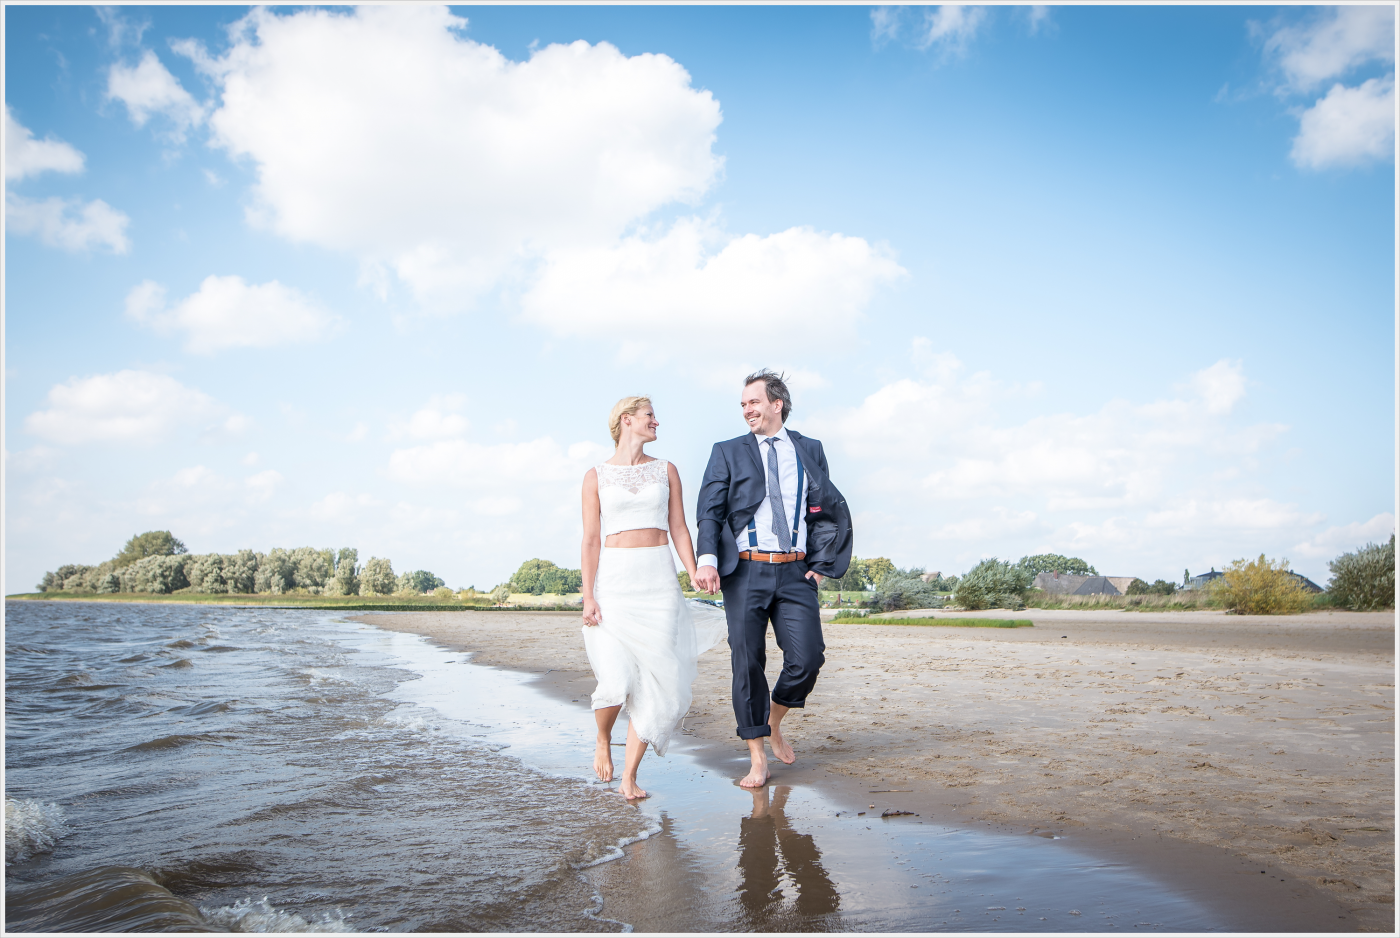 Braut und Bräutigam barfuß am Strand, sie trägt ein Hochzeitskleid, er einen Anzug, unter blauem Himmel am Meer.